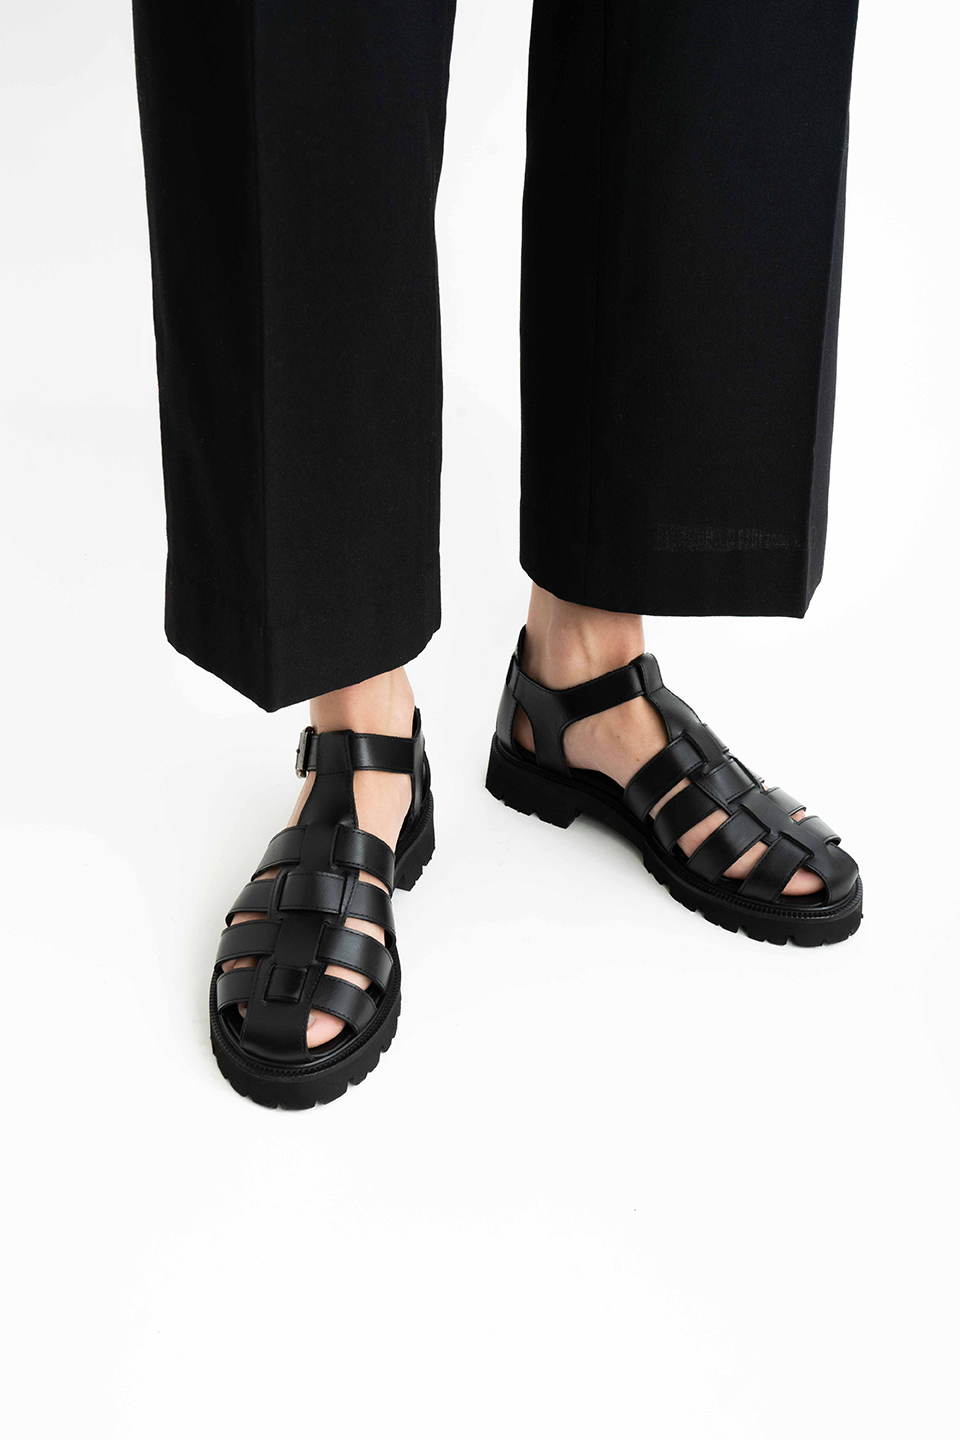 Miuccia sandaler, sort læder